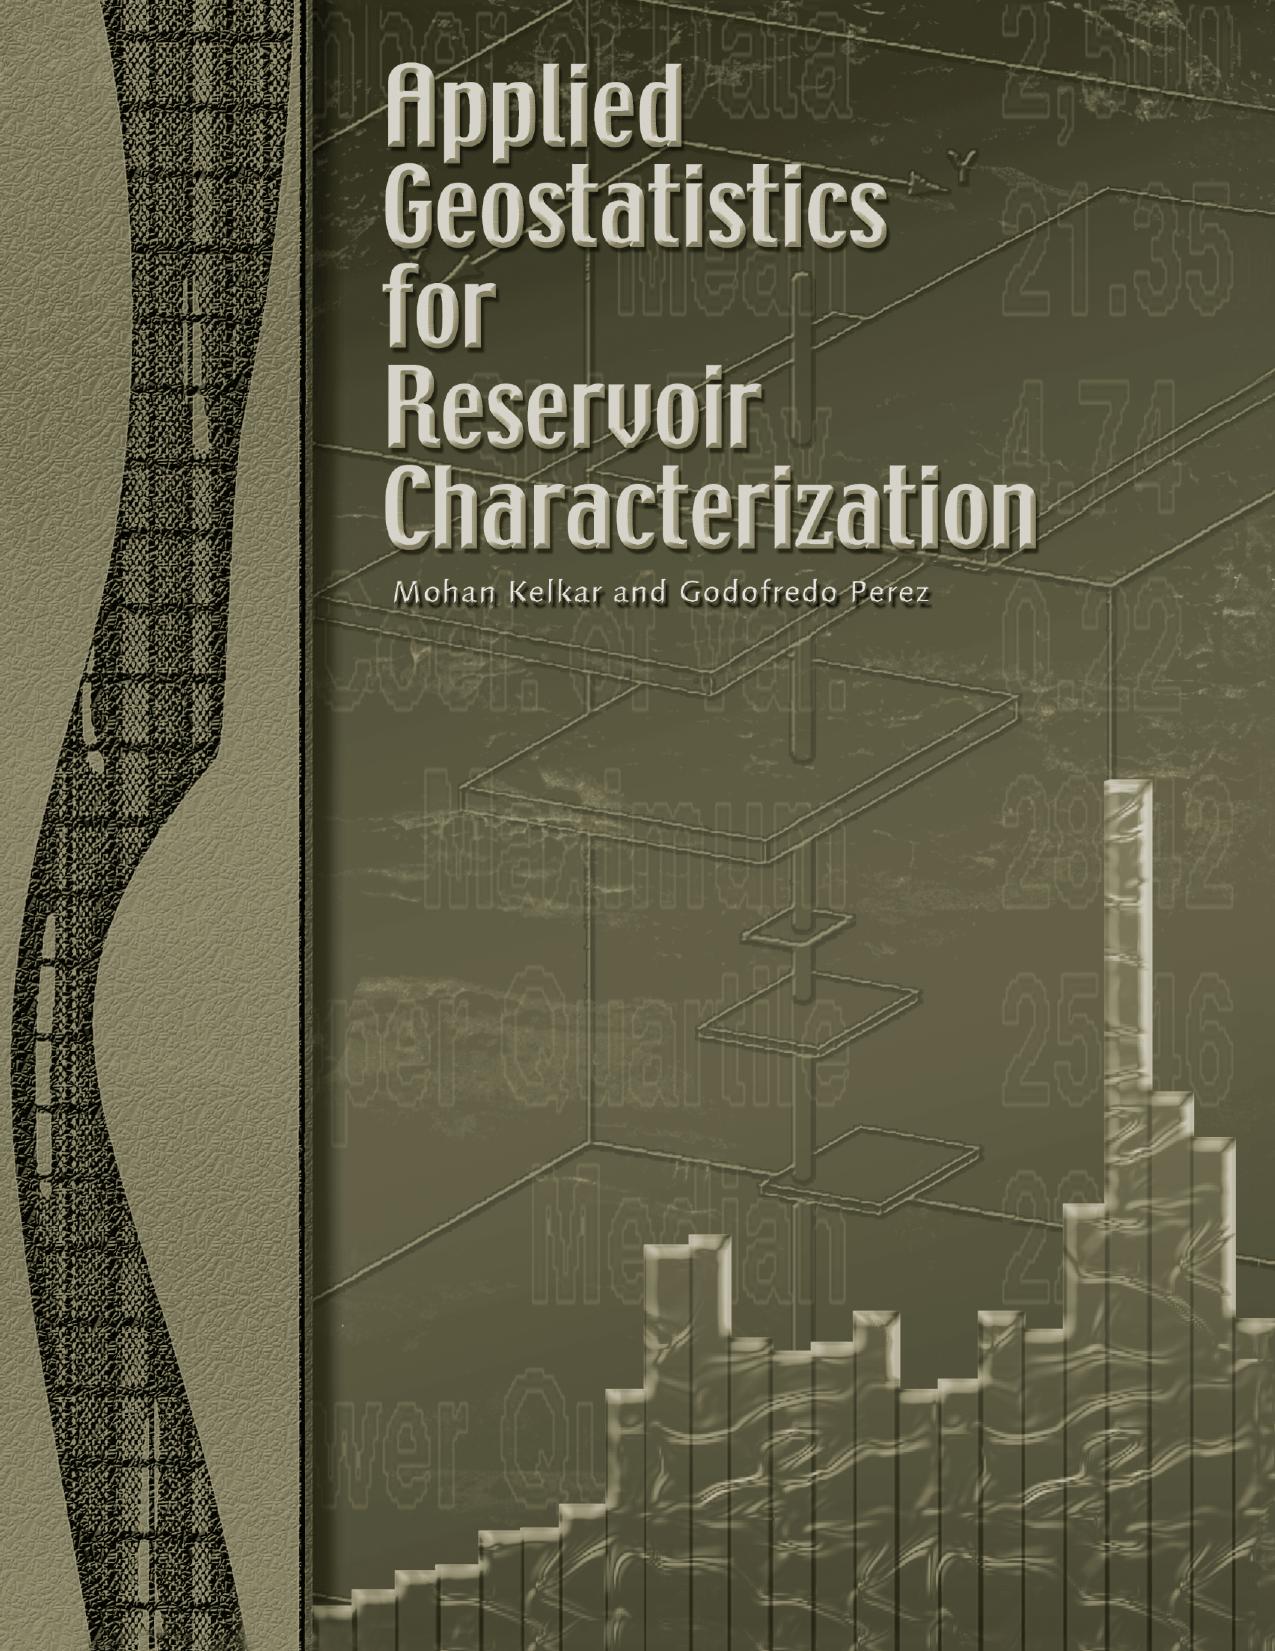 Applied Geostatistics for Reservoir Characterization by Mohan Kelkar; Godofredo Perez